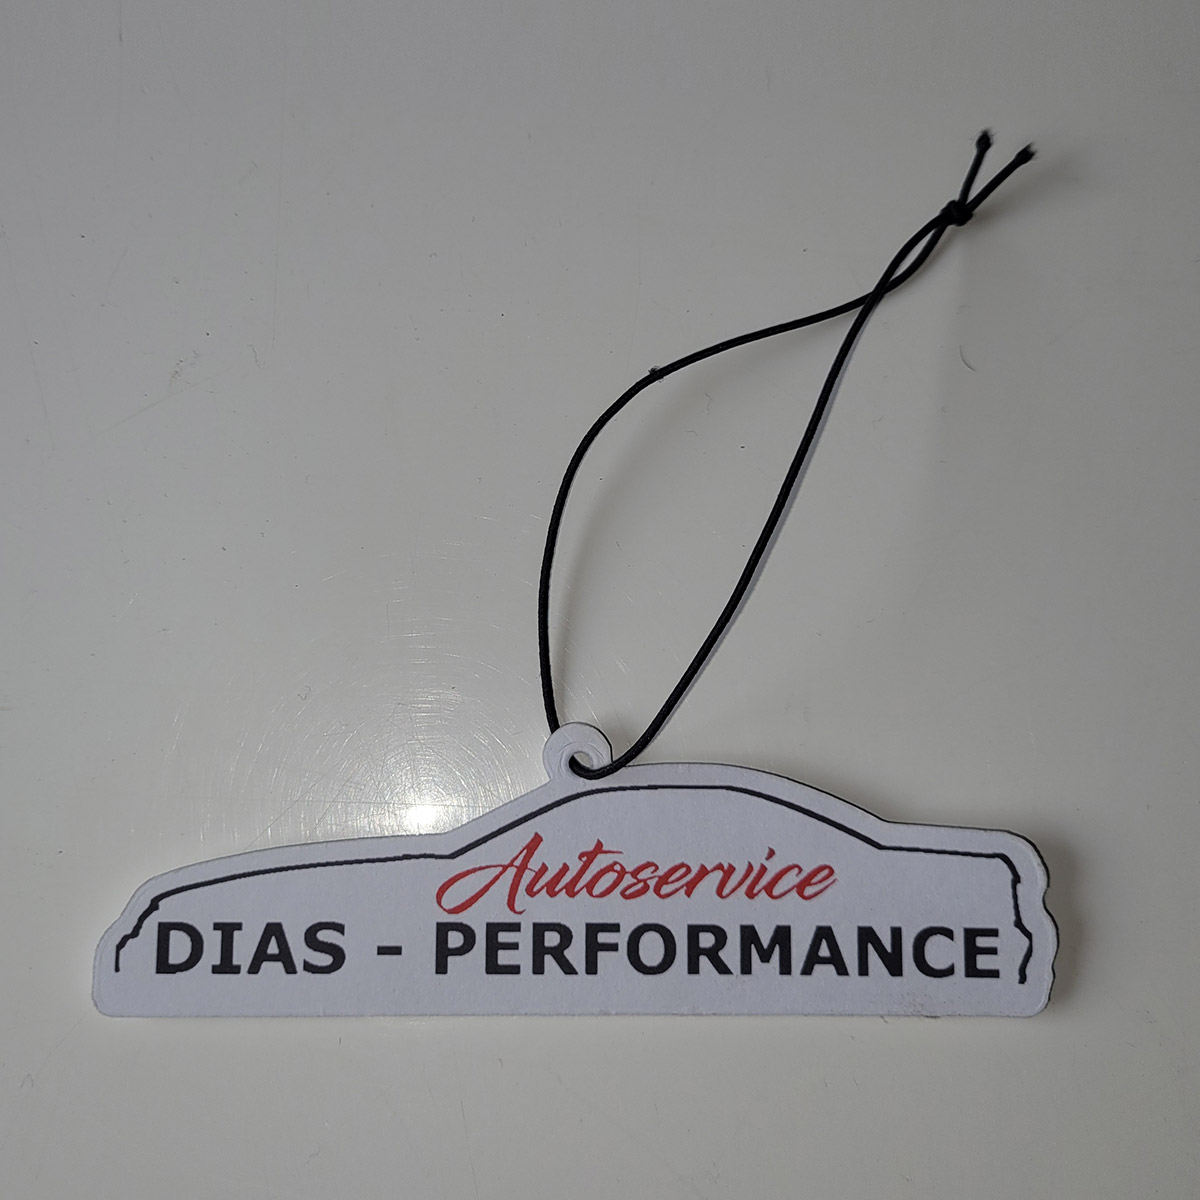 Duftbaum - Dias-Performance